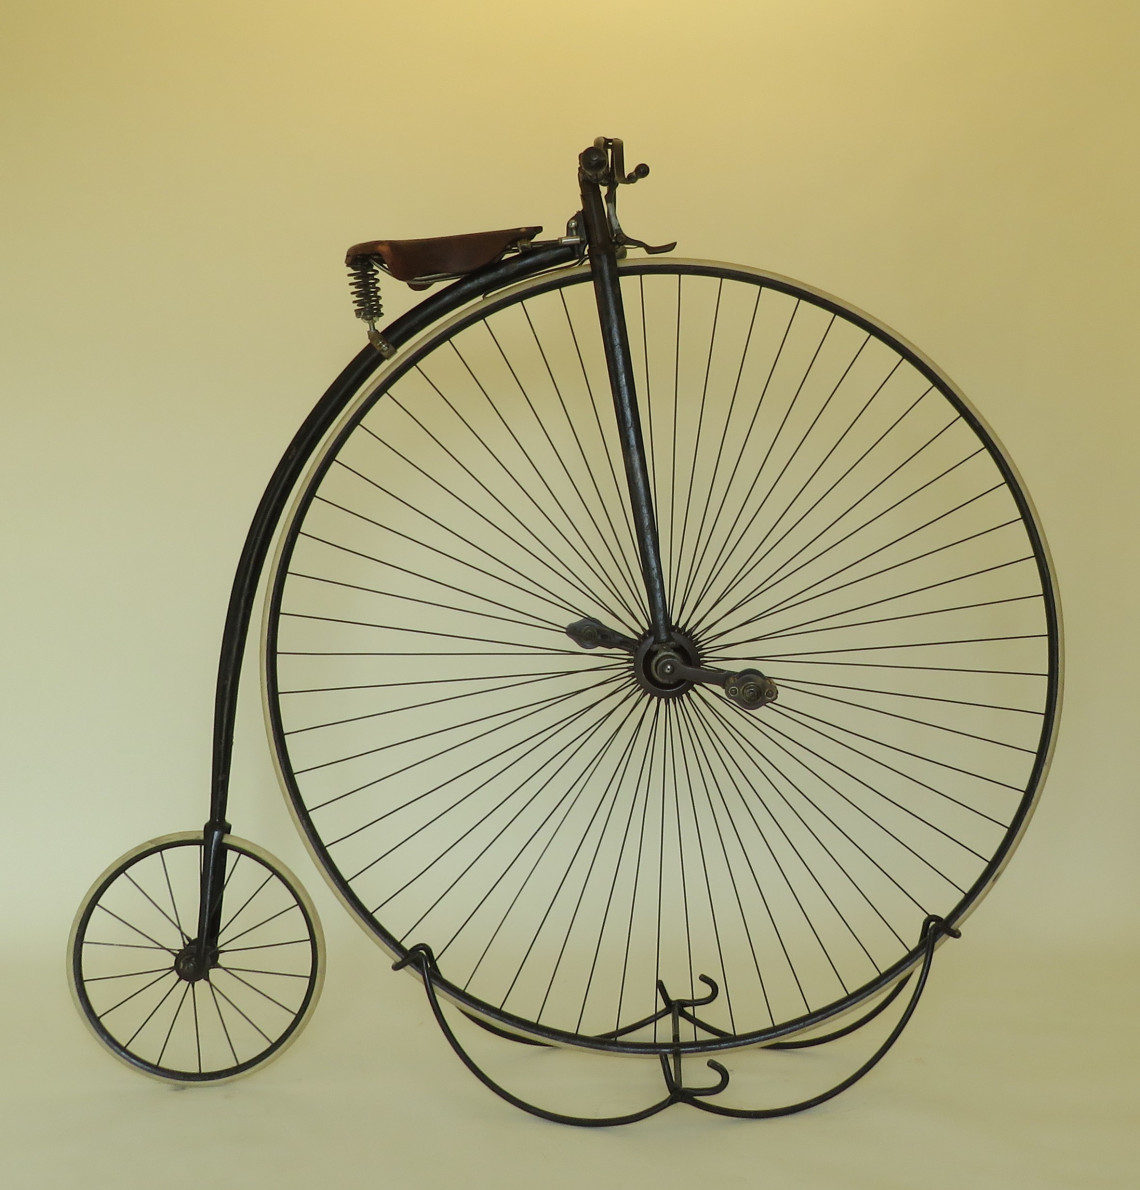 Hochrad mit großem Vorderrad und kleinem Hinterrad, vermutlich von der Firma Adler (vormals Kleyer) in Frankfurt am Main gefertigt, ca. 1885